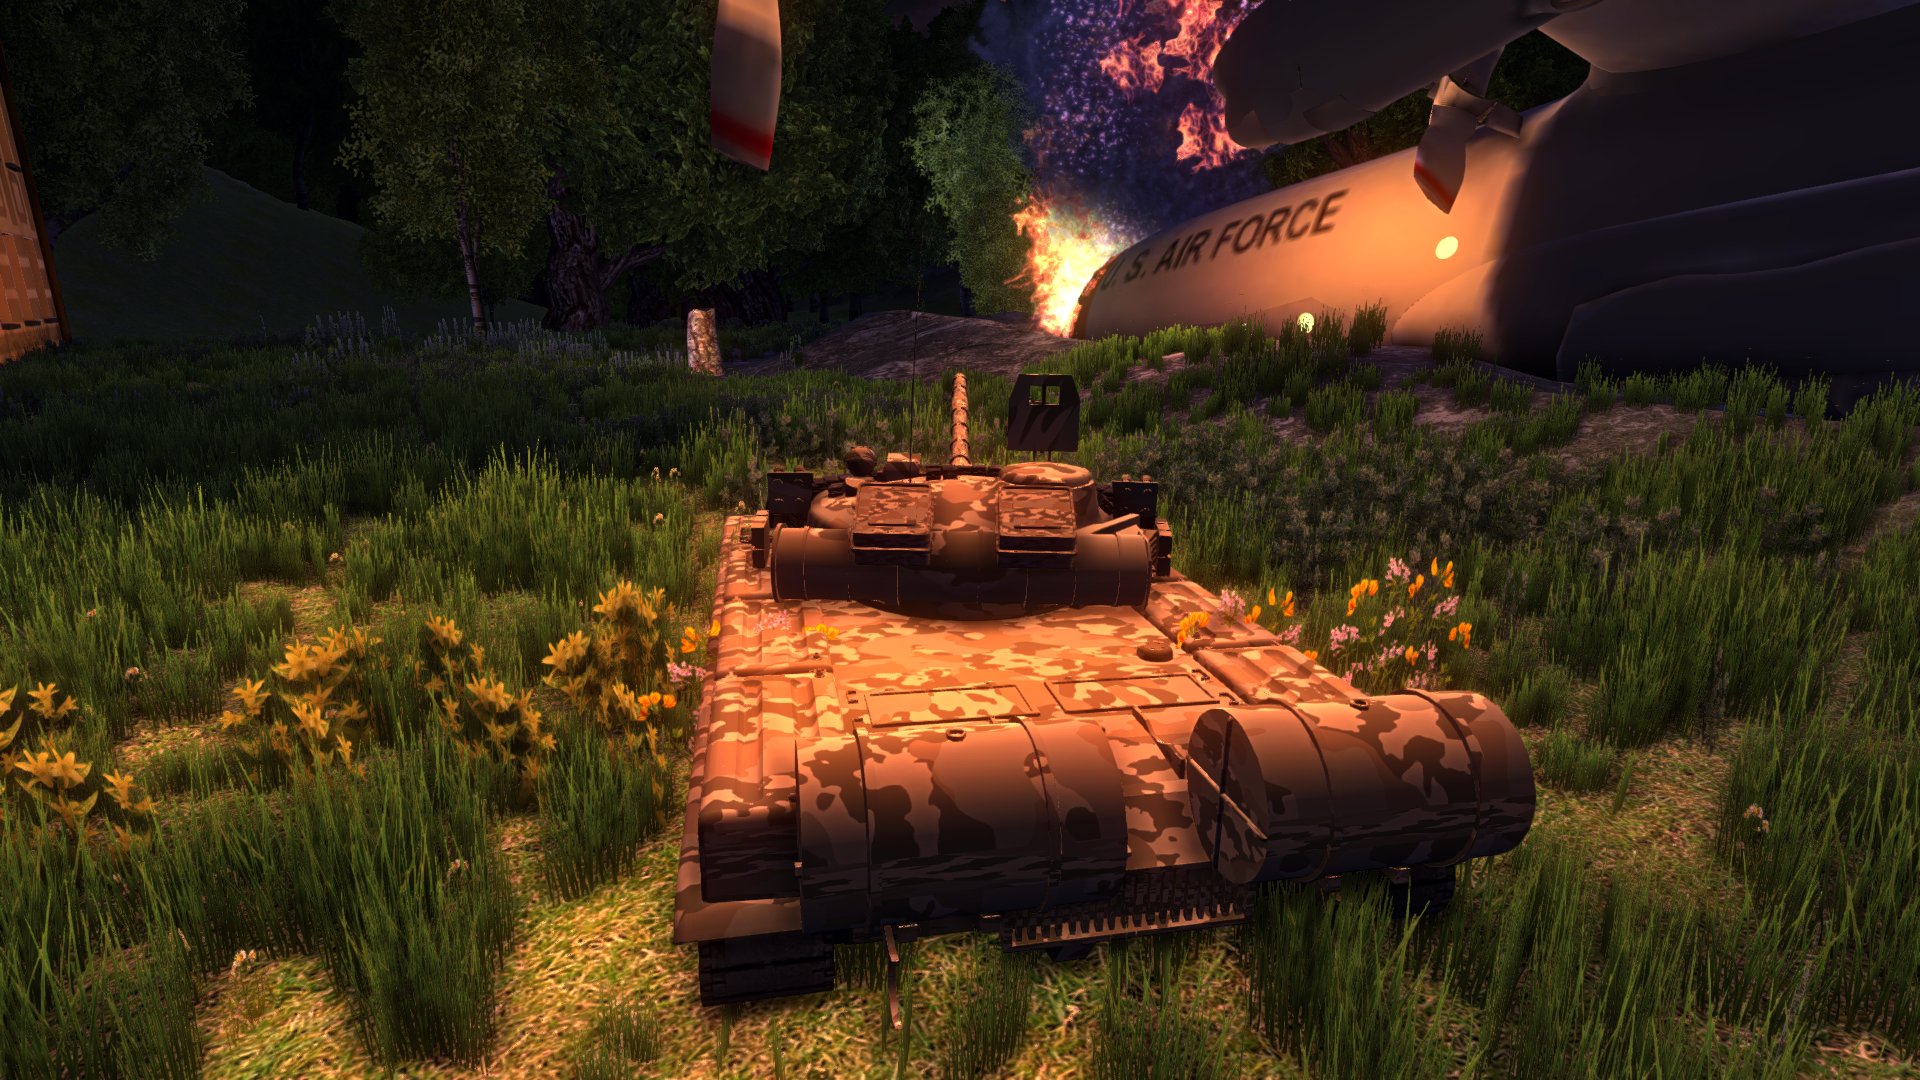 ultimate battle tanks unblocked